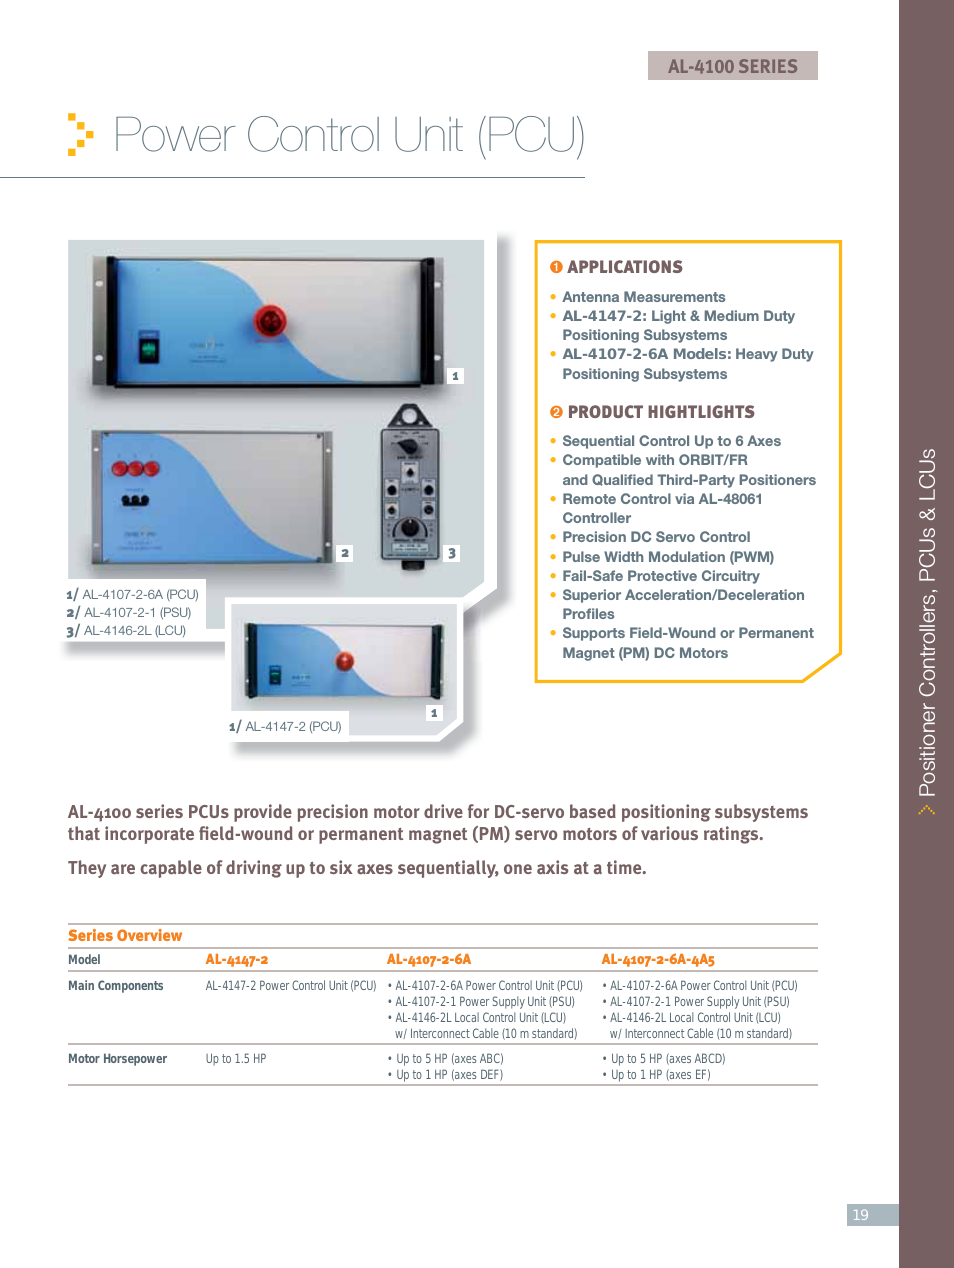 Power Control Units (PCUs): AL-4107-2-6A